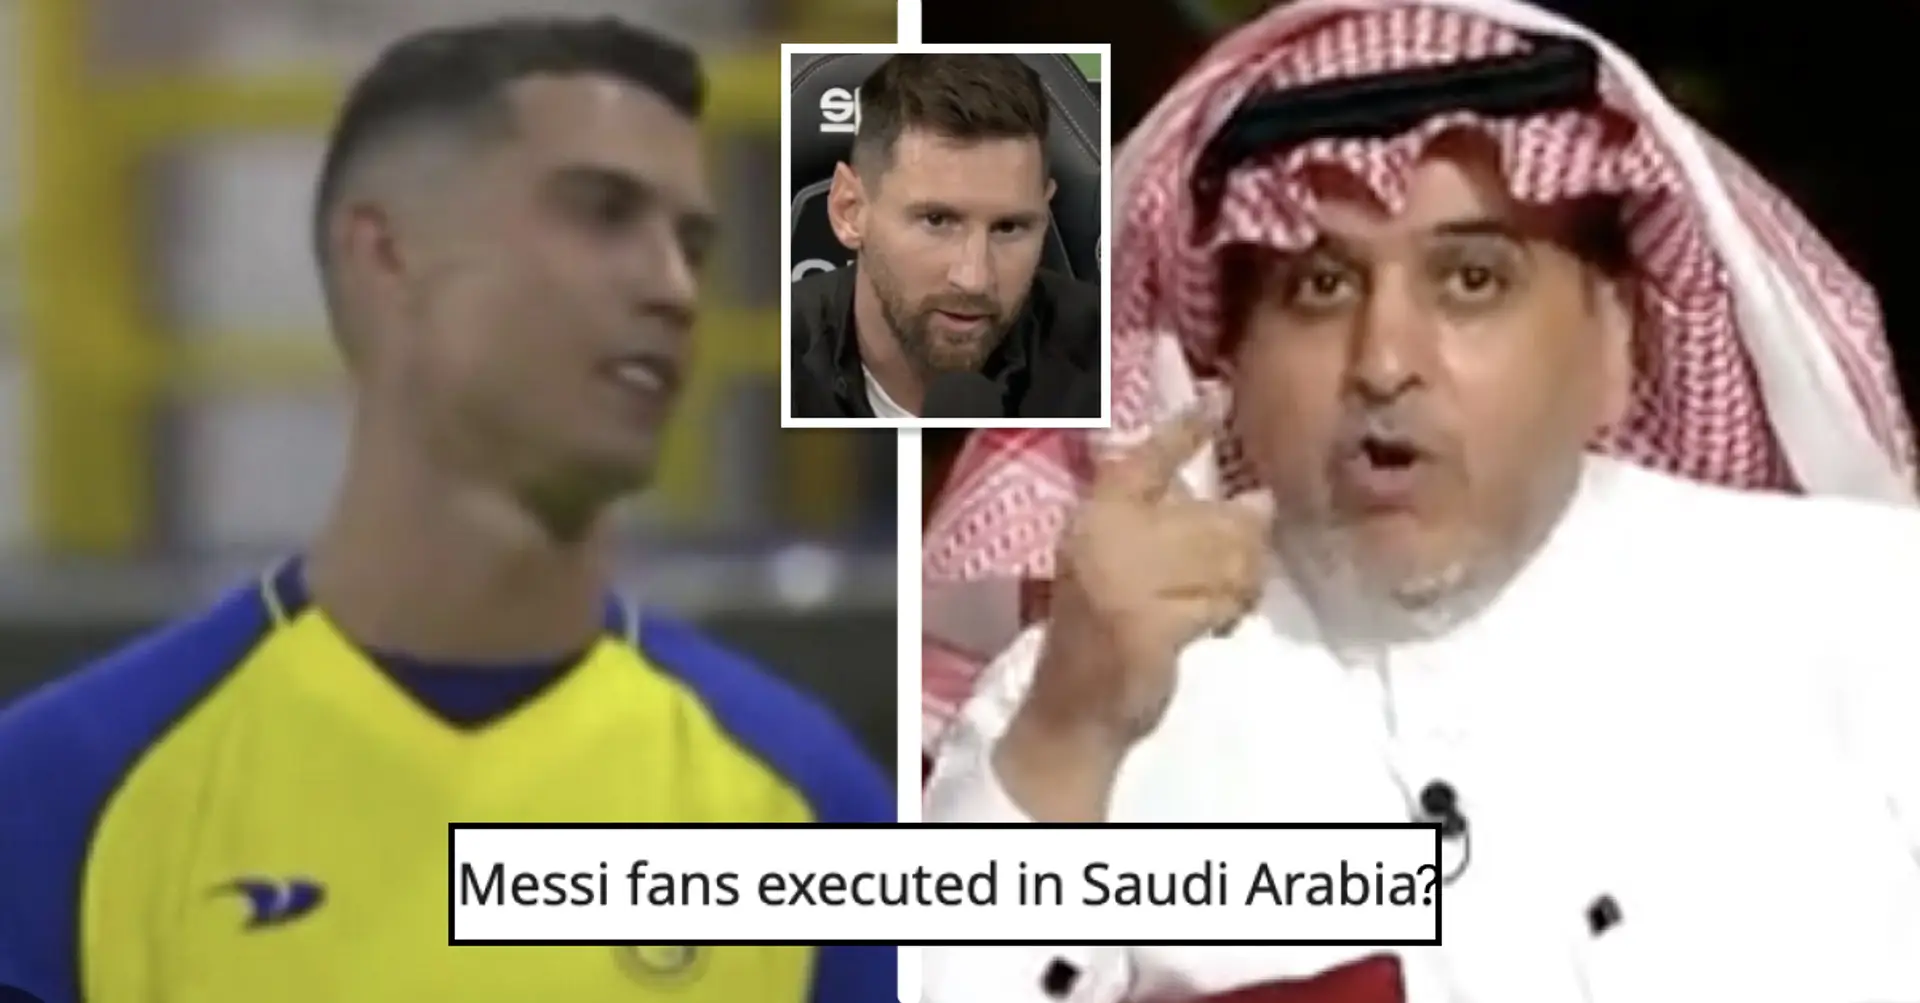 El jefe de marketing de la liga saudita sugiere medidas disciplinarias para los aficionados que abucheen a Cristiano y griten '¡Messi!'